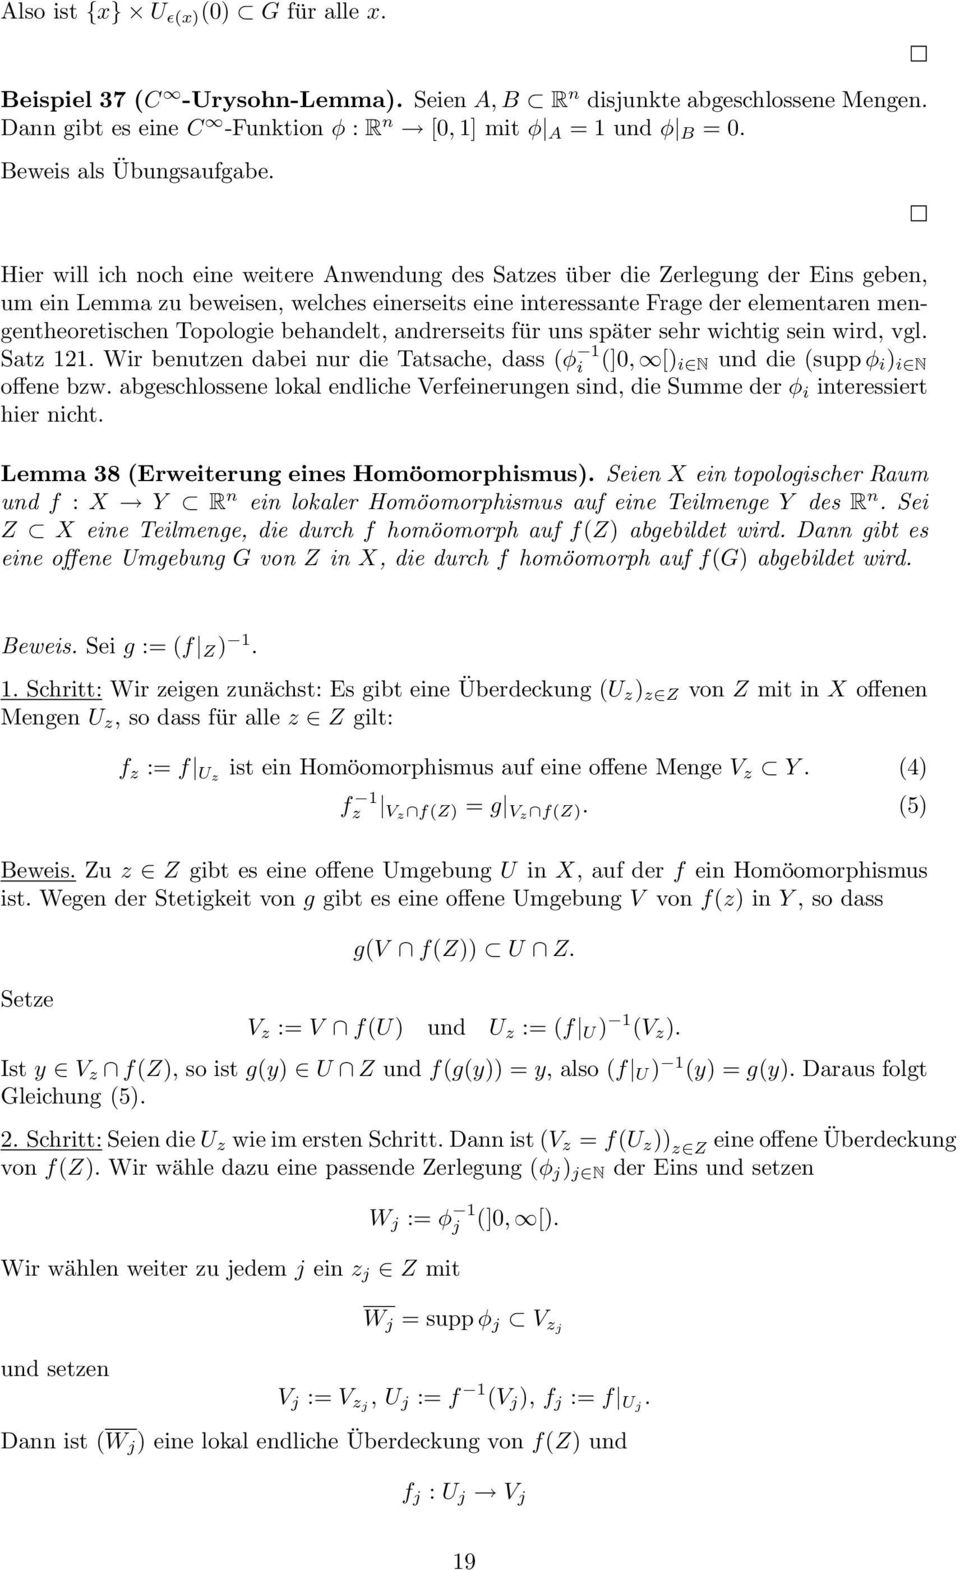 Hier will ich noch eine weitere Anwendung des Satzes über die Zerlegung der Eins geben, um ein Lemma zu beweisen, welches einerseits eine interessante Frage der elementaren mengentheoretischen